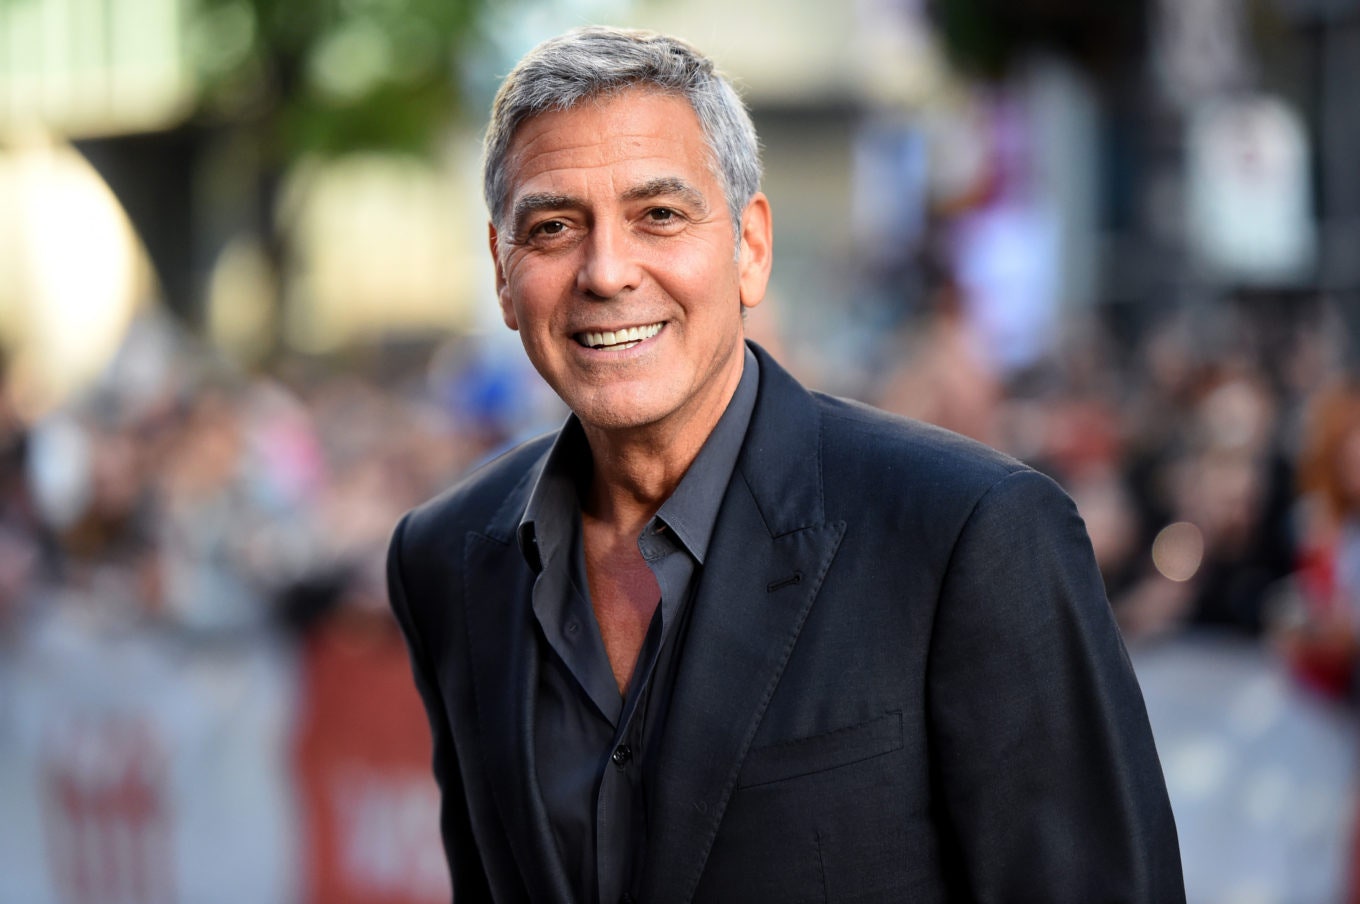 Джордж Клуни — о супруге Амаль суицидальных мыслях и о том как подарил близким друзьям по 1 миллиону